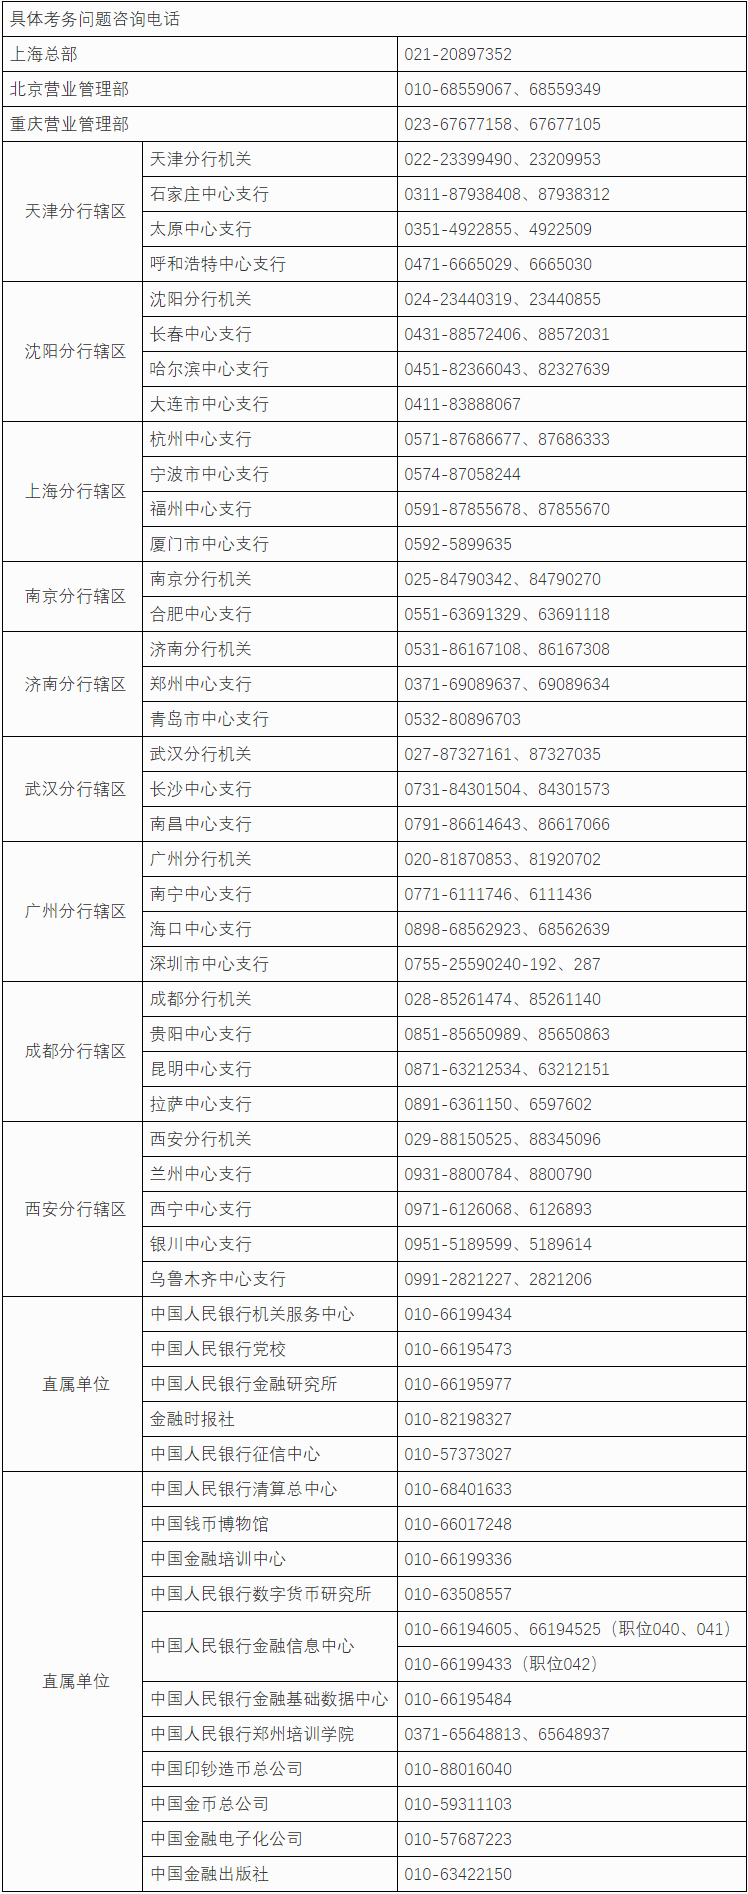 中国人民银行分支机构和直属单位2020年度人员录用招考（招聘）公告.png